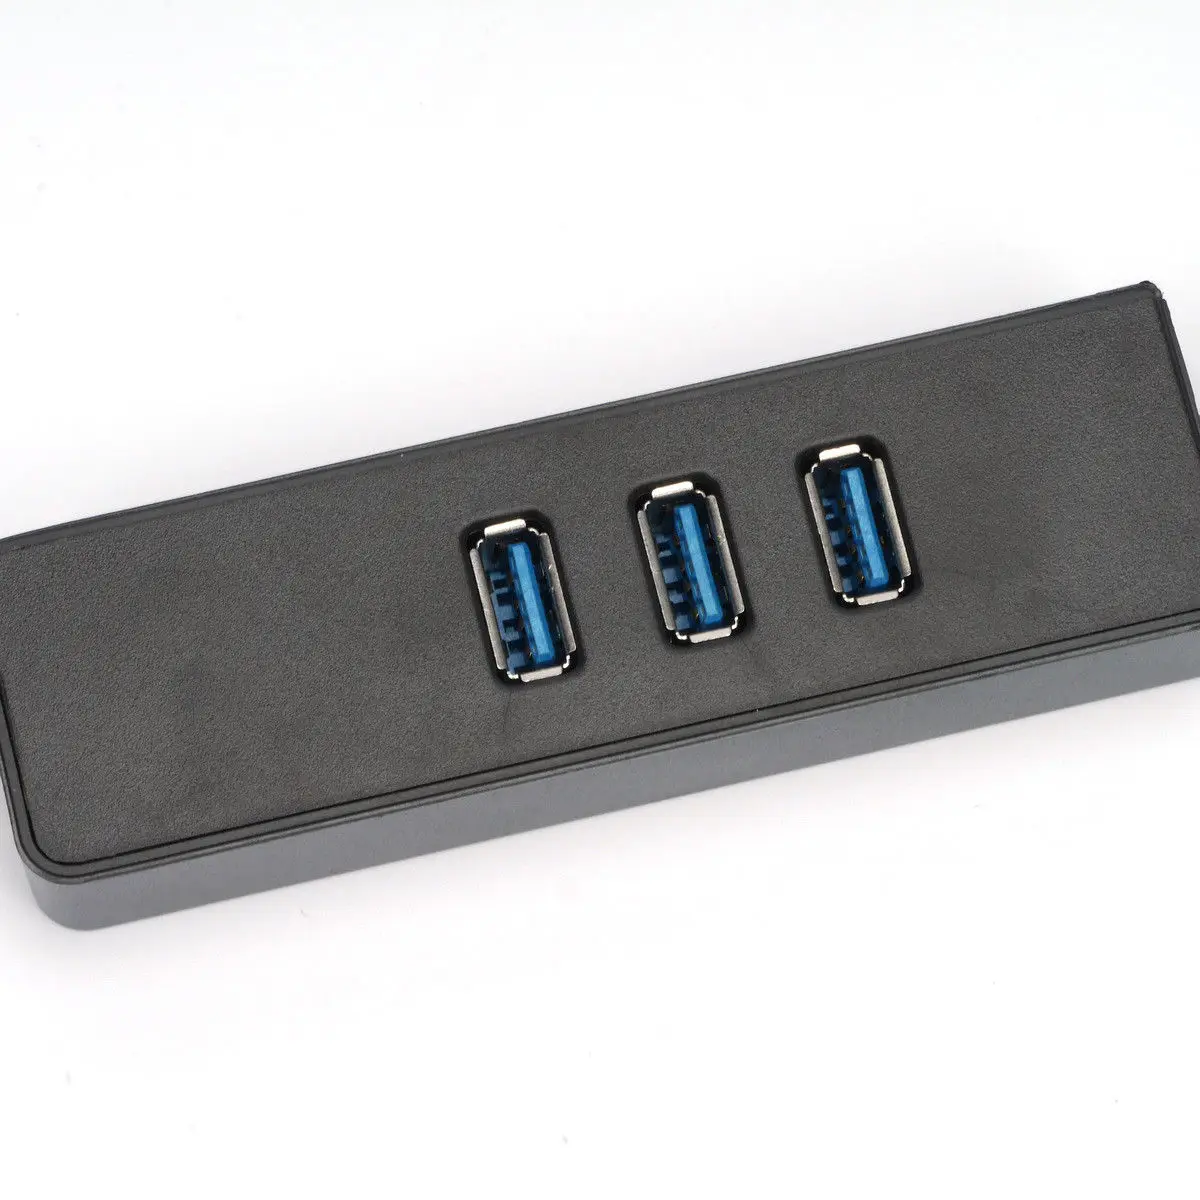 BLEL Горячая 3 порта USB 3,0 Gigabit Ethernet Lan RJ45 сетевой адаптер концентратор до 1000 Мбит/с ПК